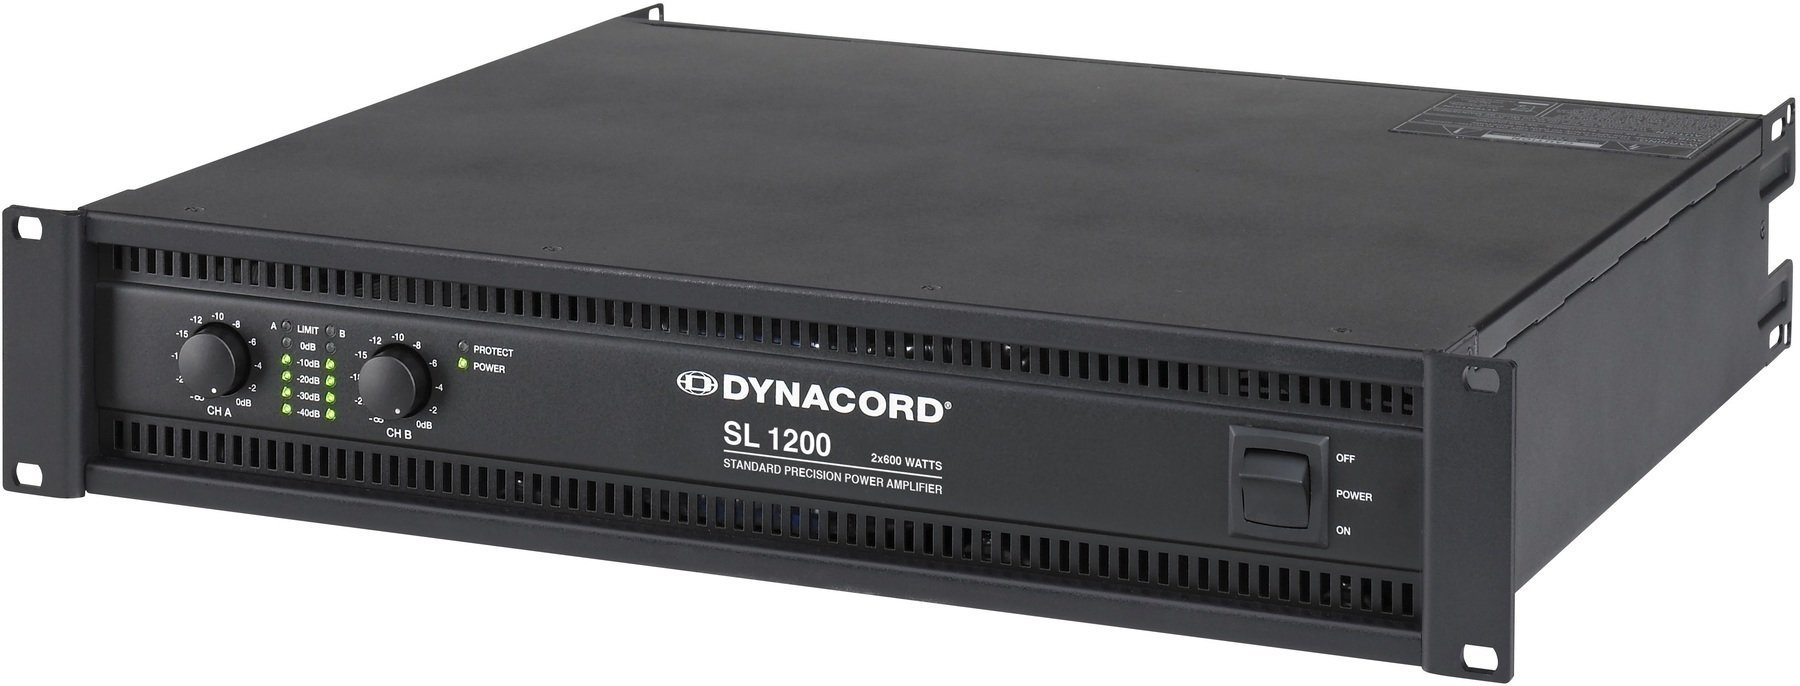 Amplificateurs de puissance Dynacord SL-1200 Amplificateurs de puissance